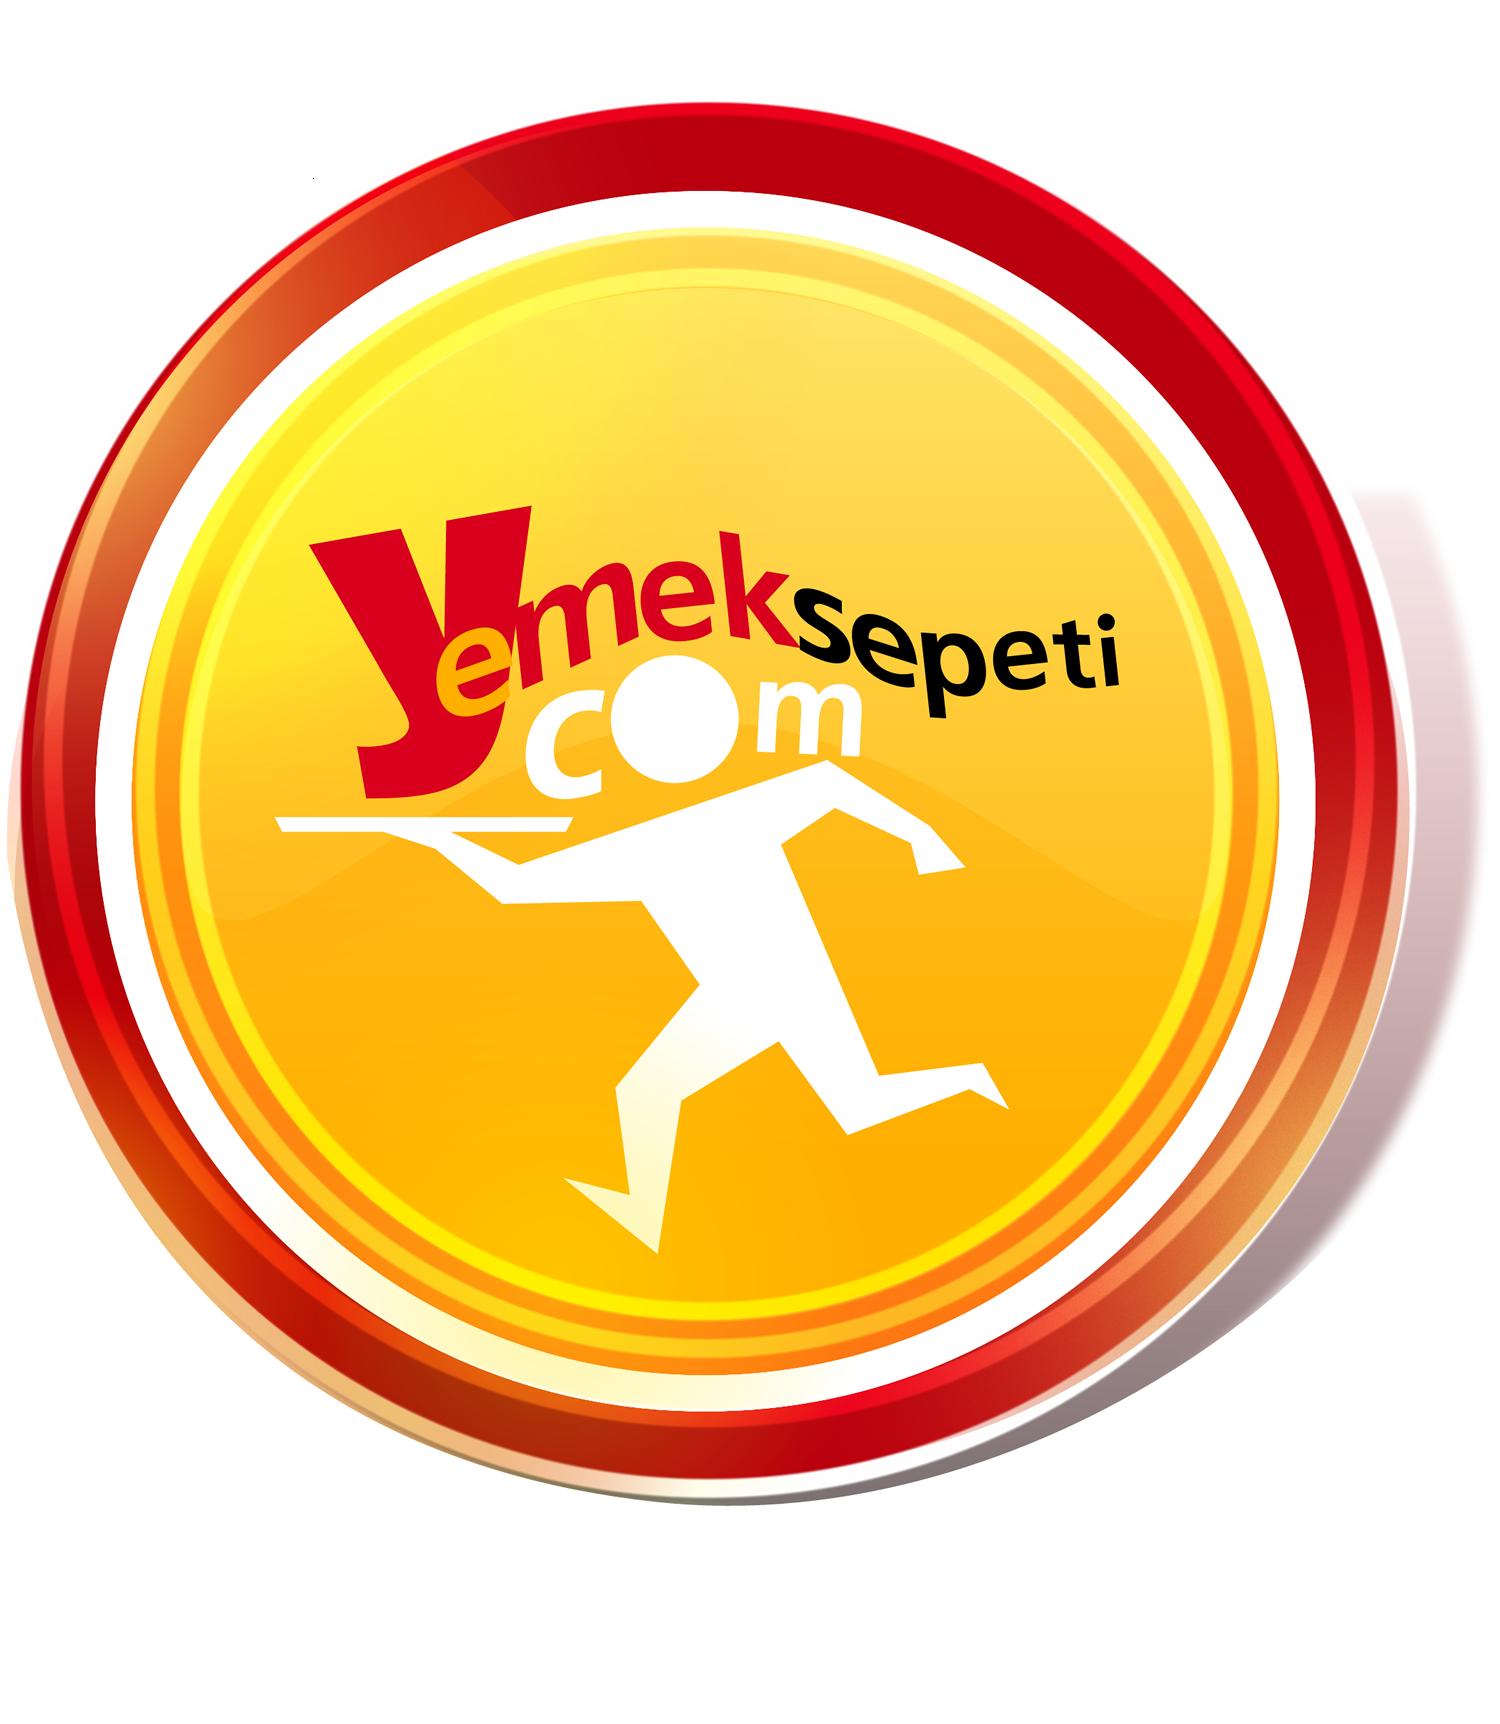 Yemek Sepeti Logo photo - 1